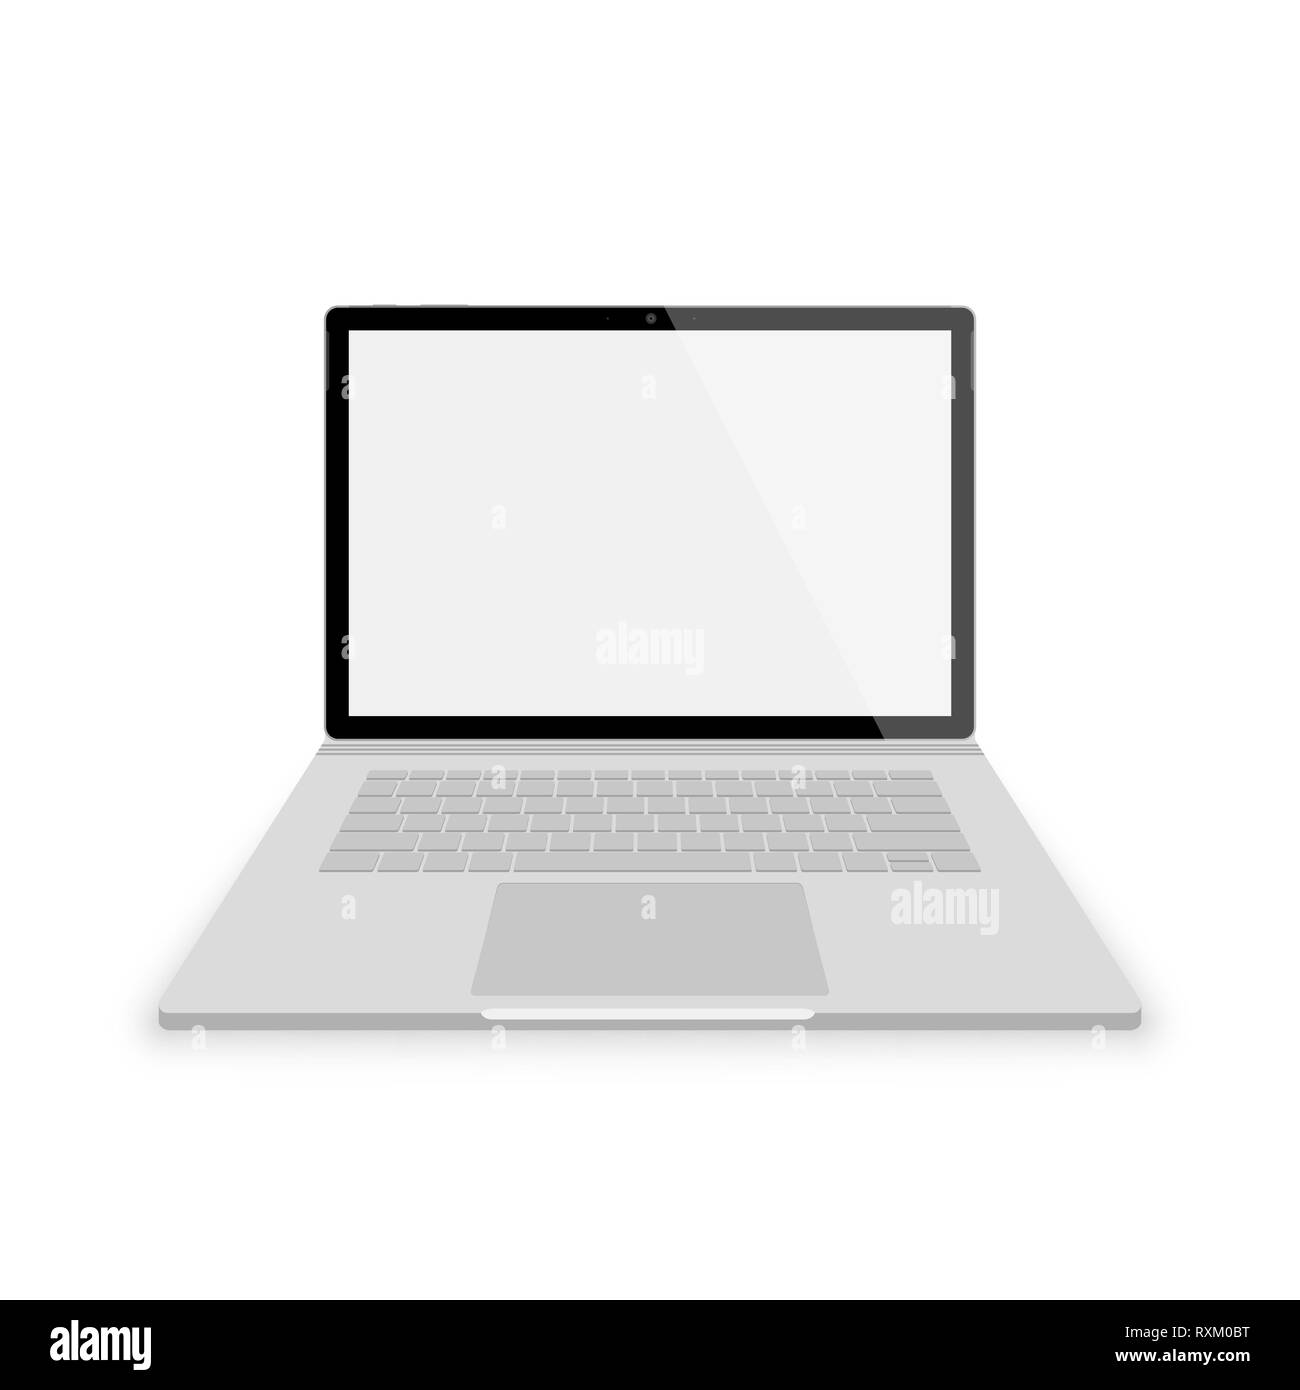 Realistico grigia laptop vista frontale. illustrazioni vettoriali isolati su sfondo bianco. portatile con gli Scrin vuota Illustrazione Vettoriale